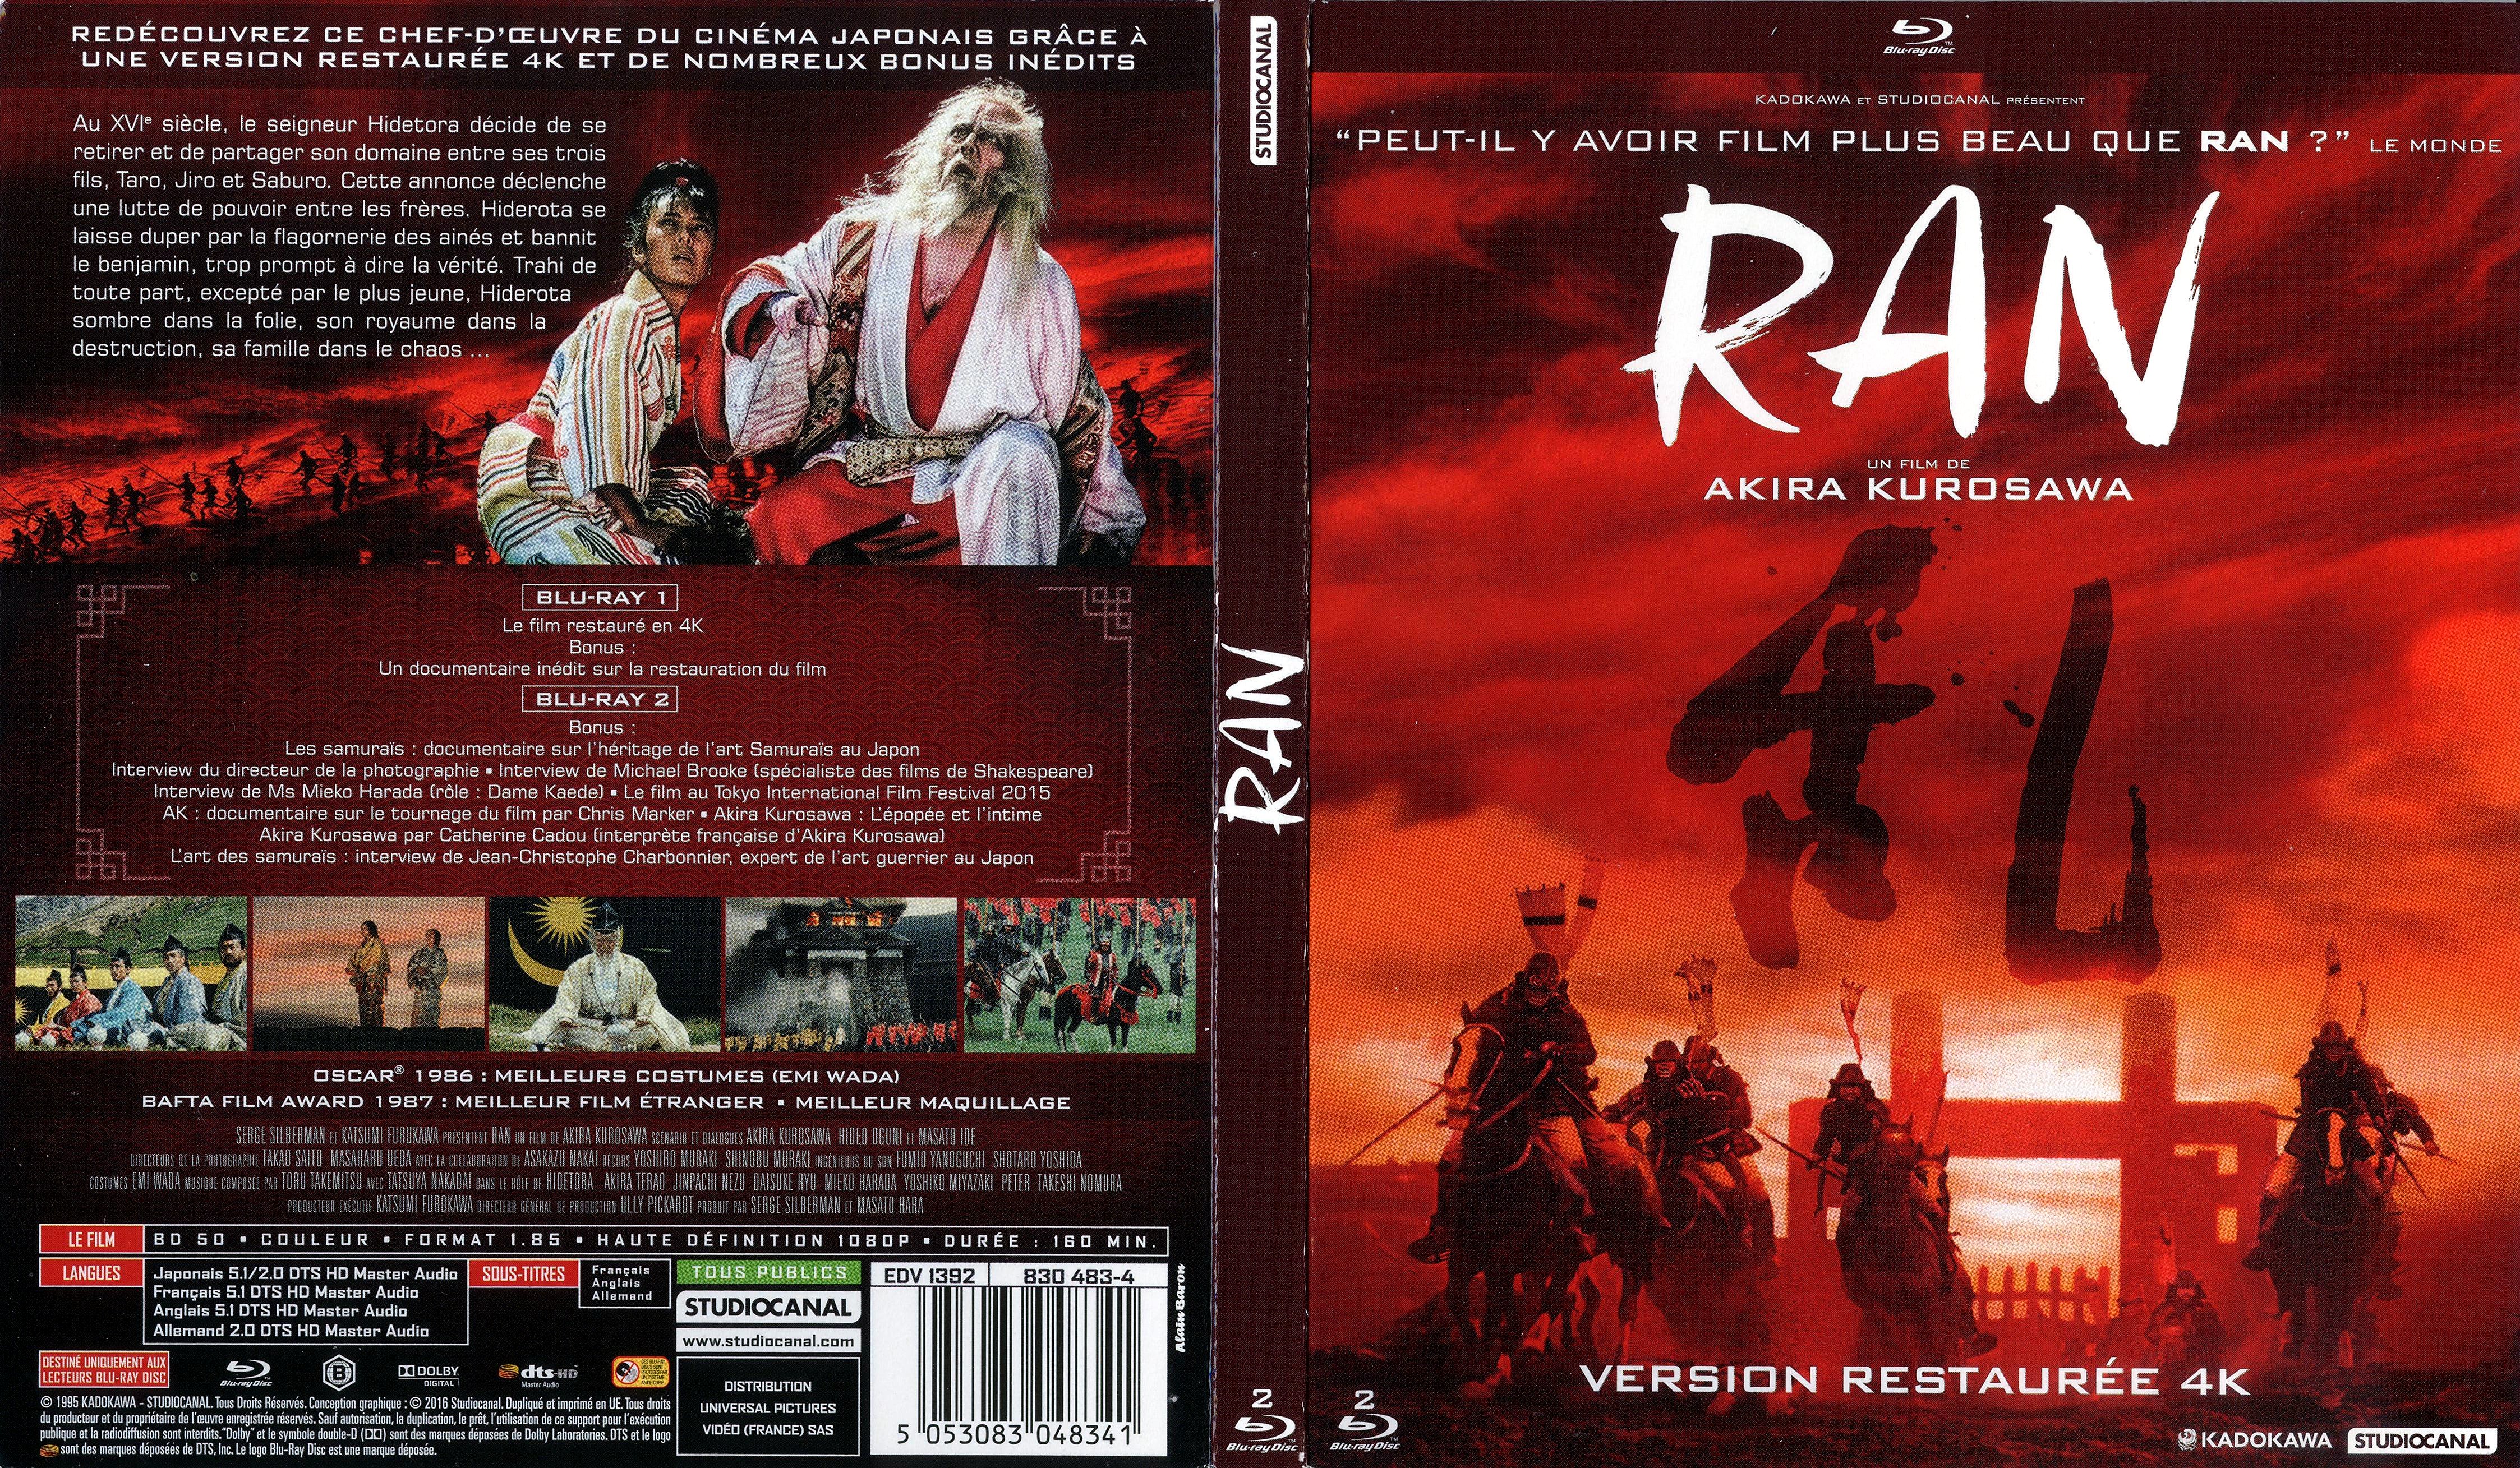 Jaquette DVD Ran (BLU-RAY) v2